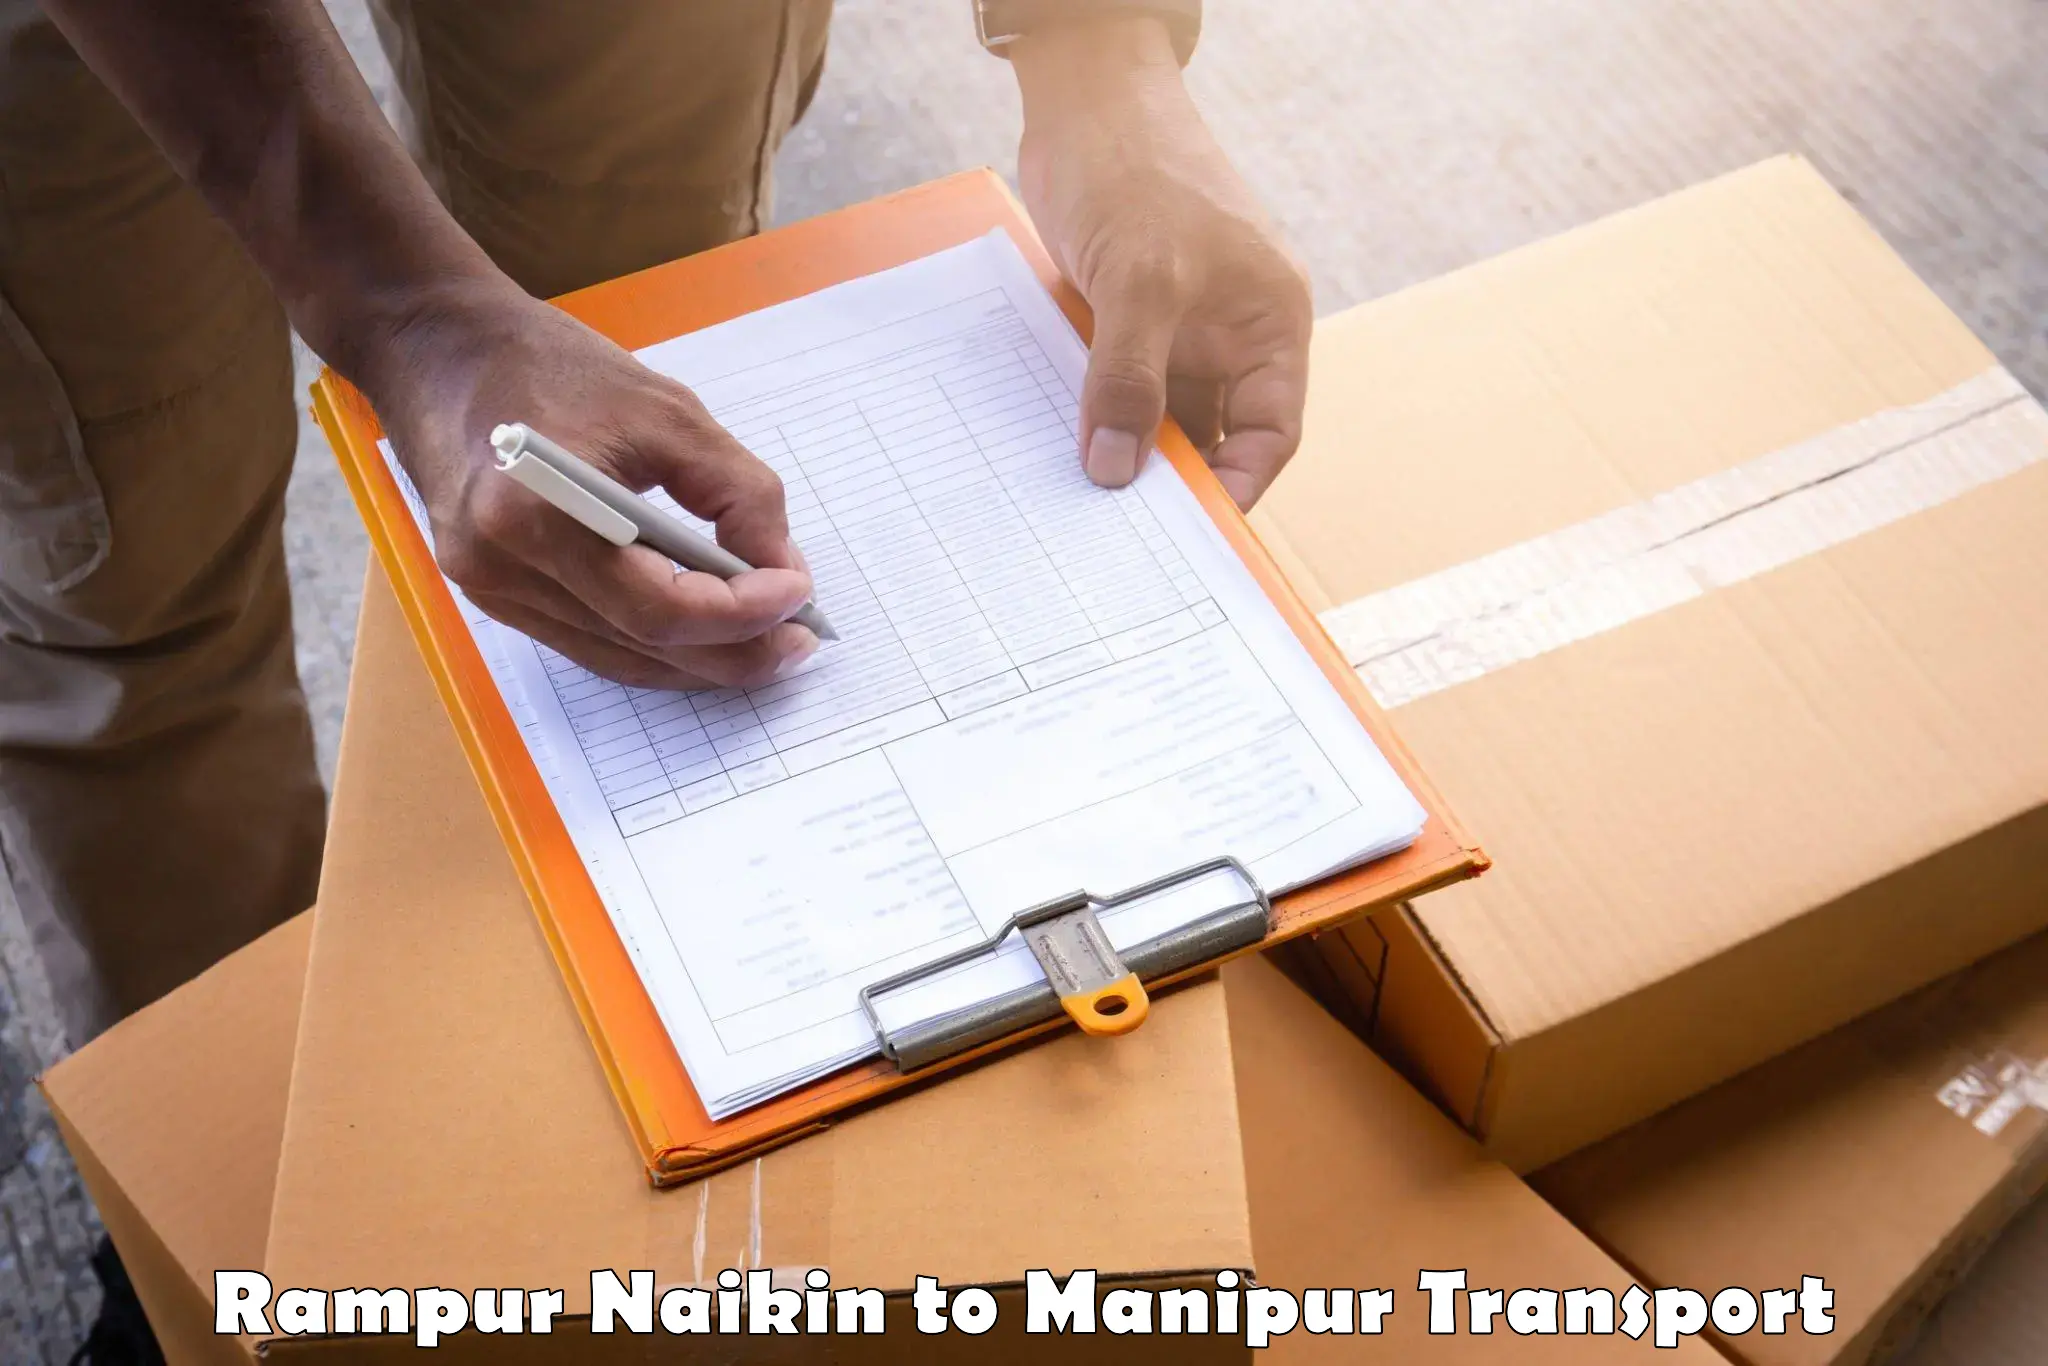 International cargo transportation services Rampur Naikin to NIT Manipur